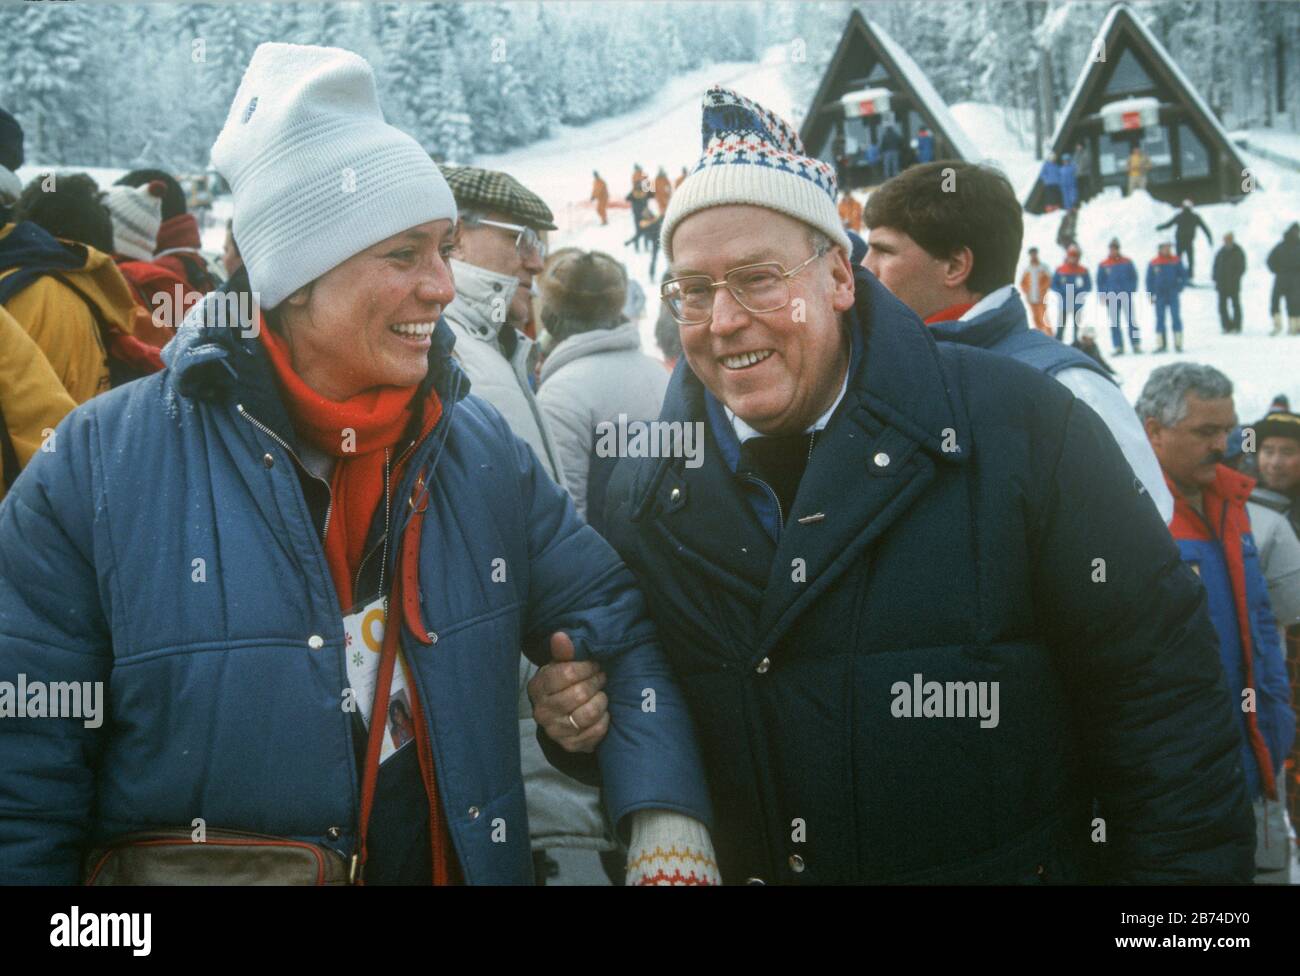 Rosi Mittermaier und der ehemalige Bundeslandwirtschaftsminister Josef Ertl (FDP) trafen sich am Rande der Damenabfahrt bei den Olympischen Winterspielen in Sarajevo am 16. Februar 1984. Weltweite Verwendung Stockfoto